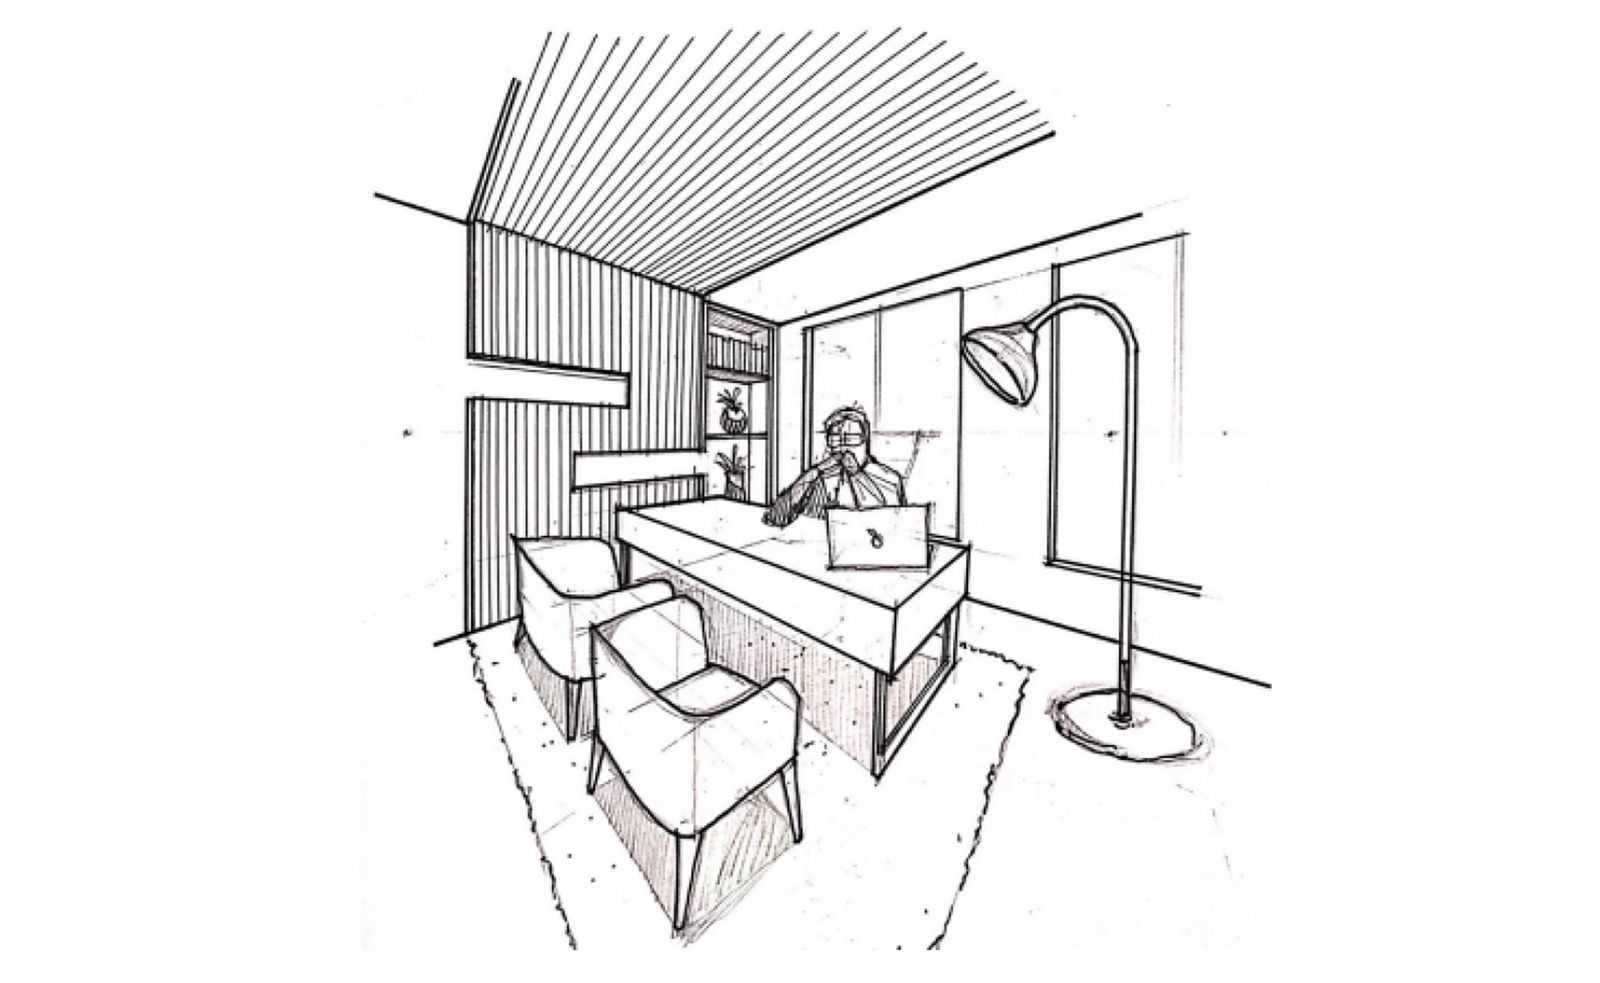 Interior perspective sketch